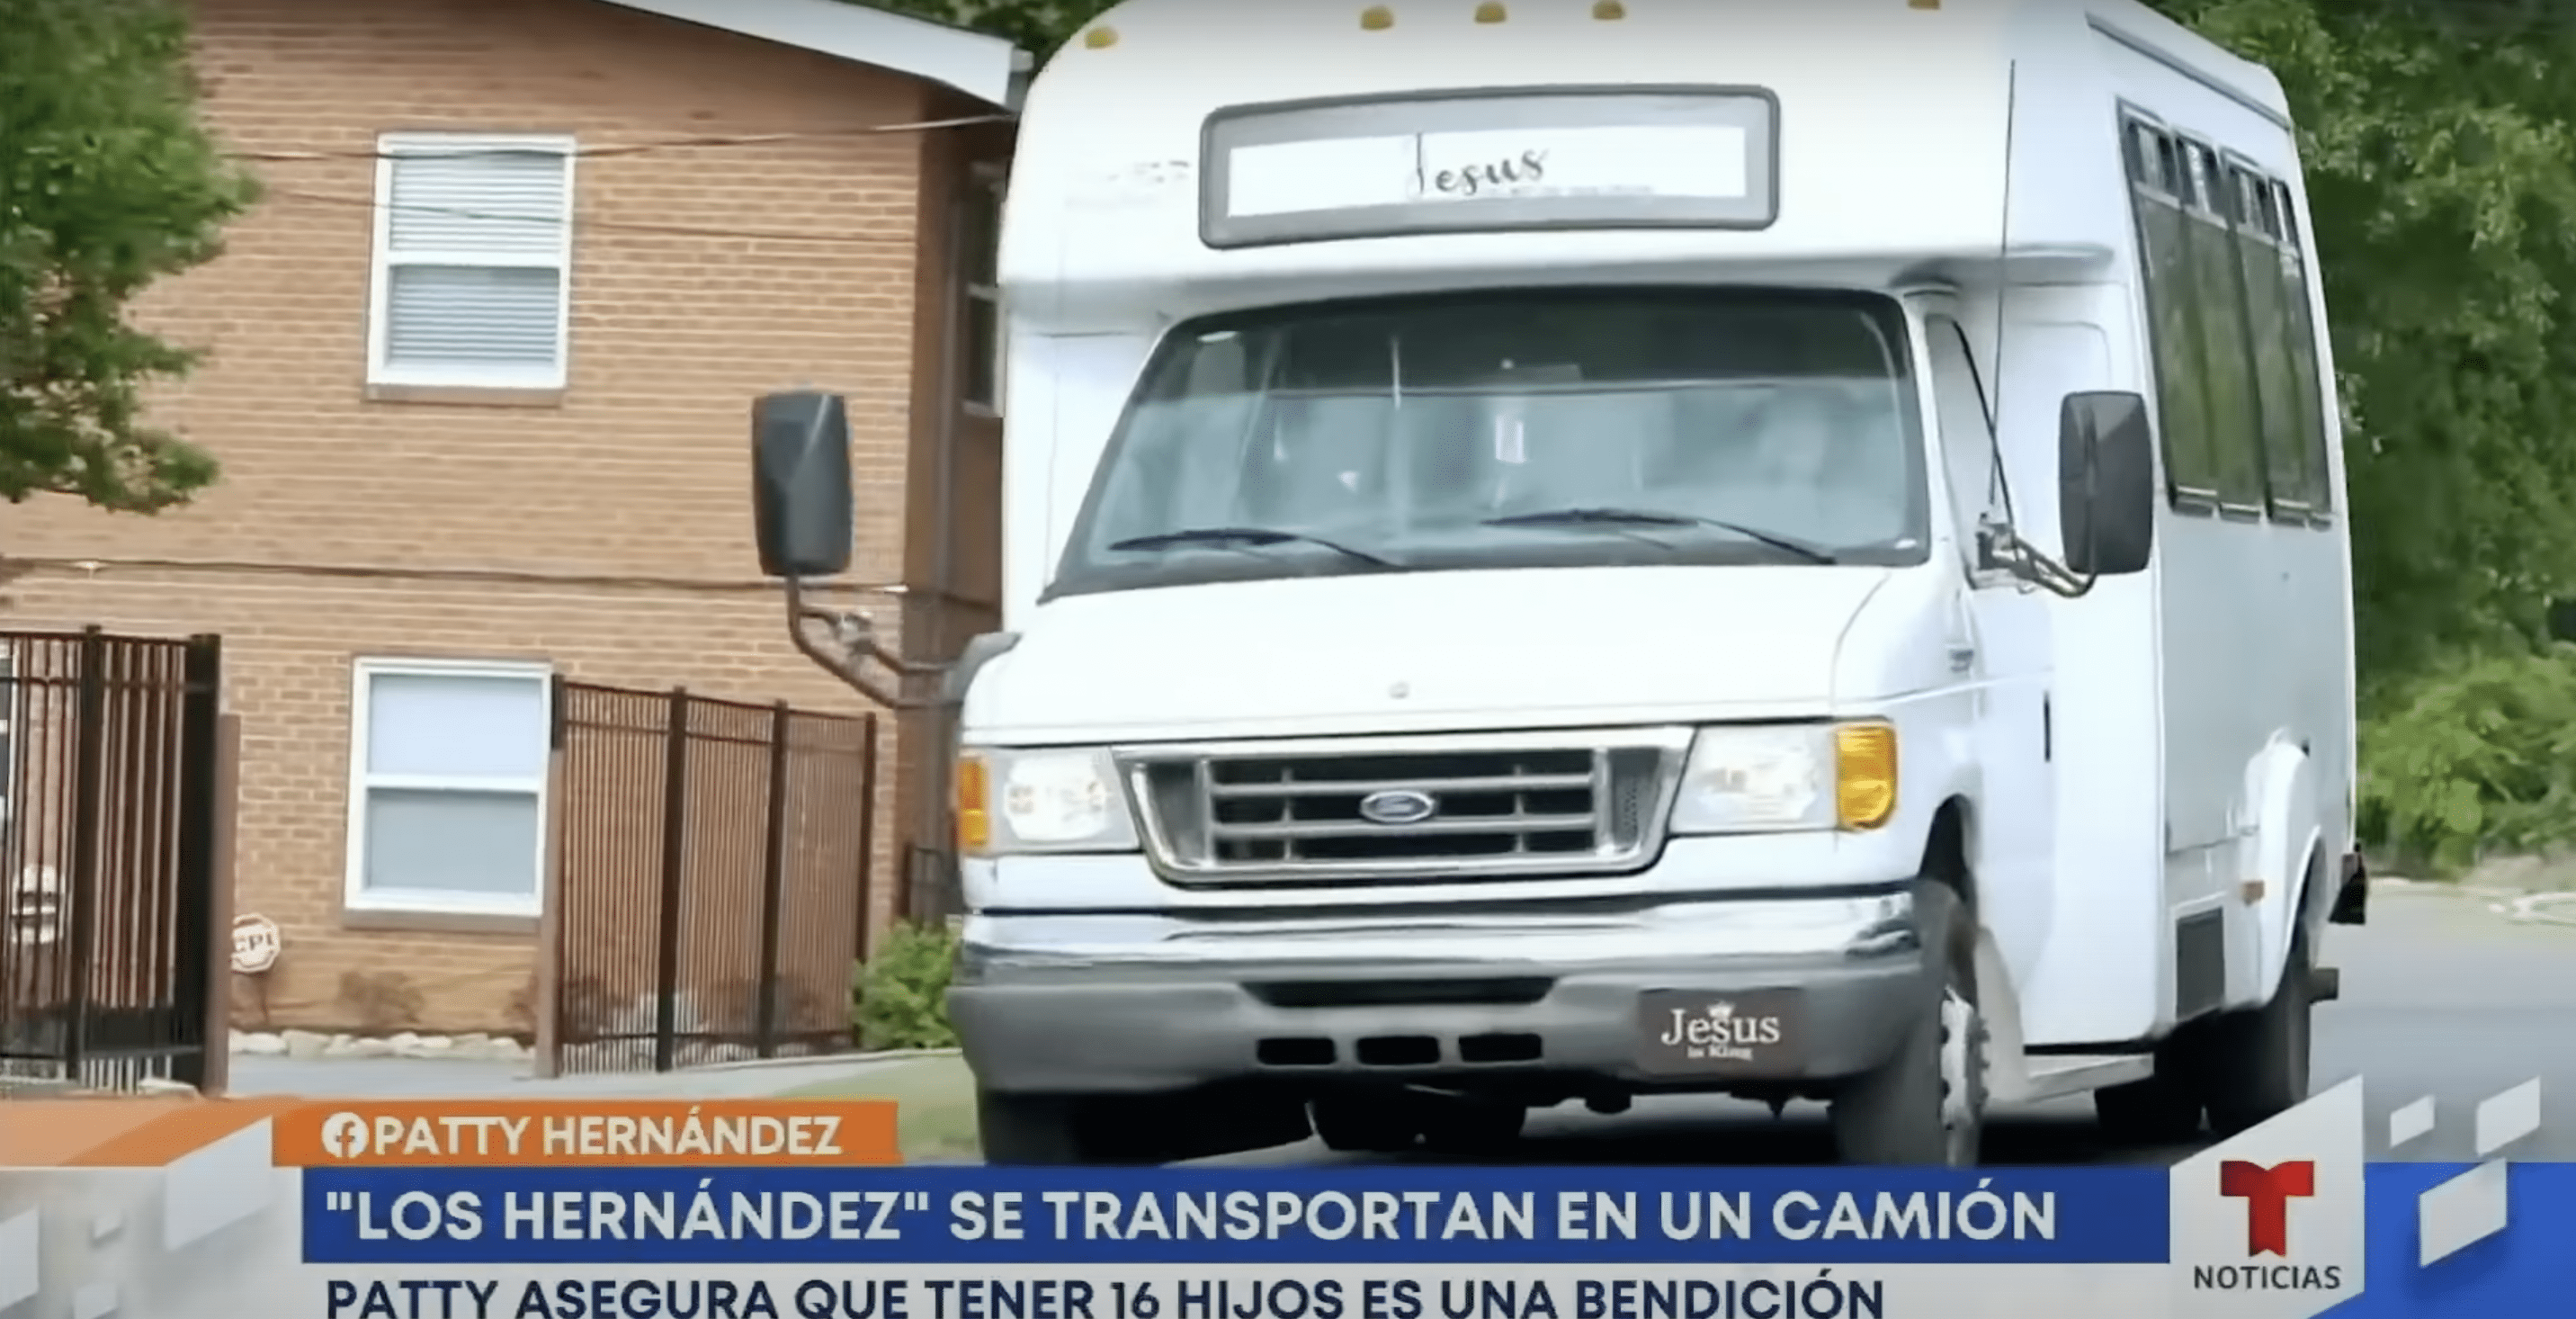 Le bus de 20 places de la famille Hernandez. | Source : YouTube.com/hoy Día